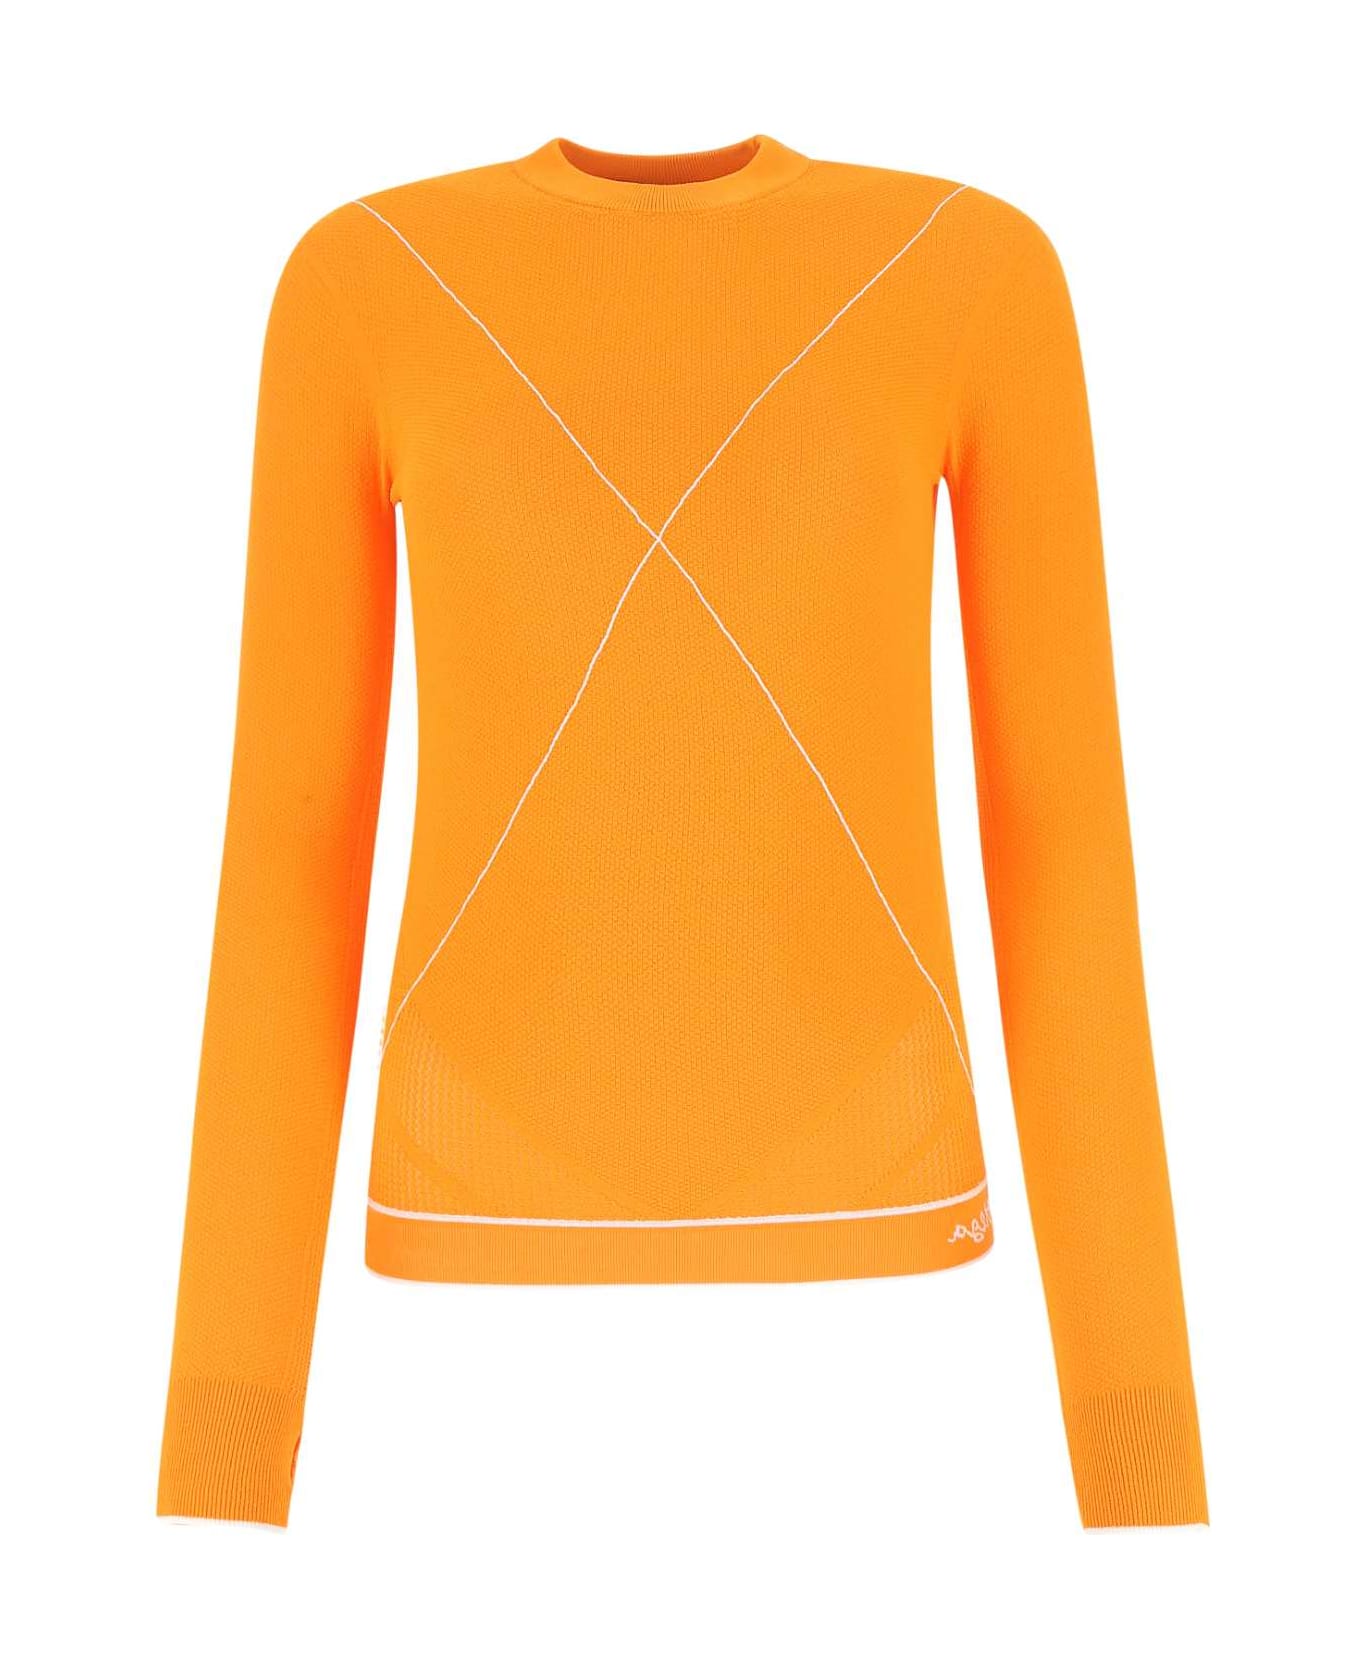 Bottega Veneta Orange Viscose Blend Sweater - 7960